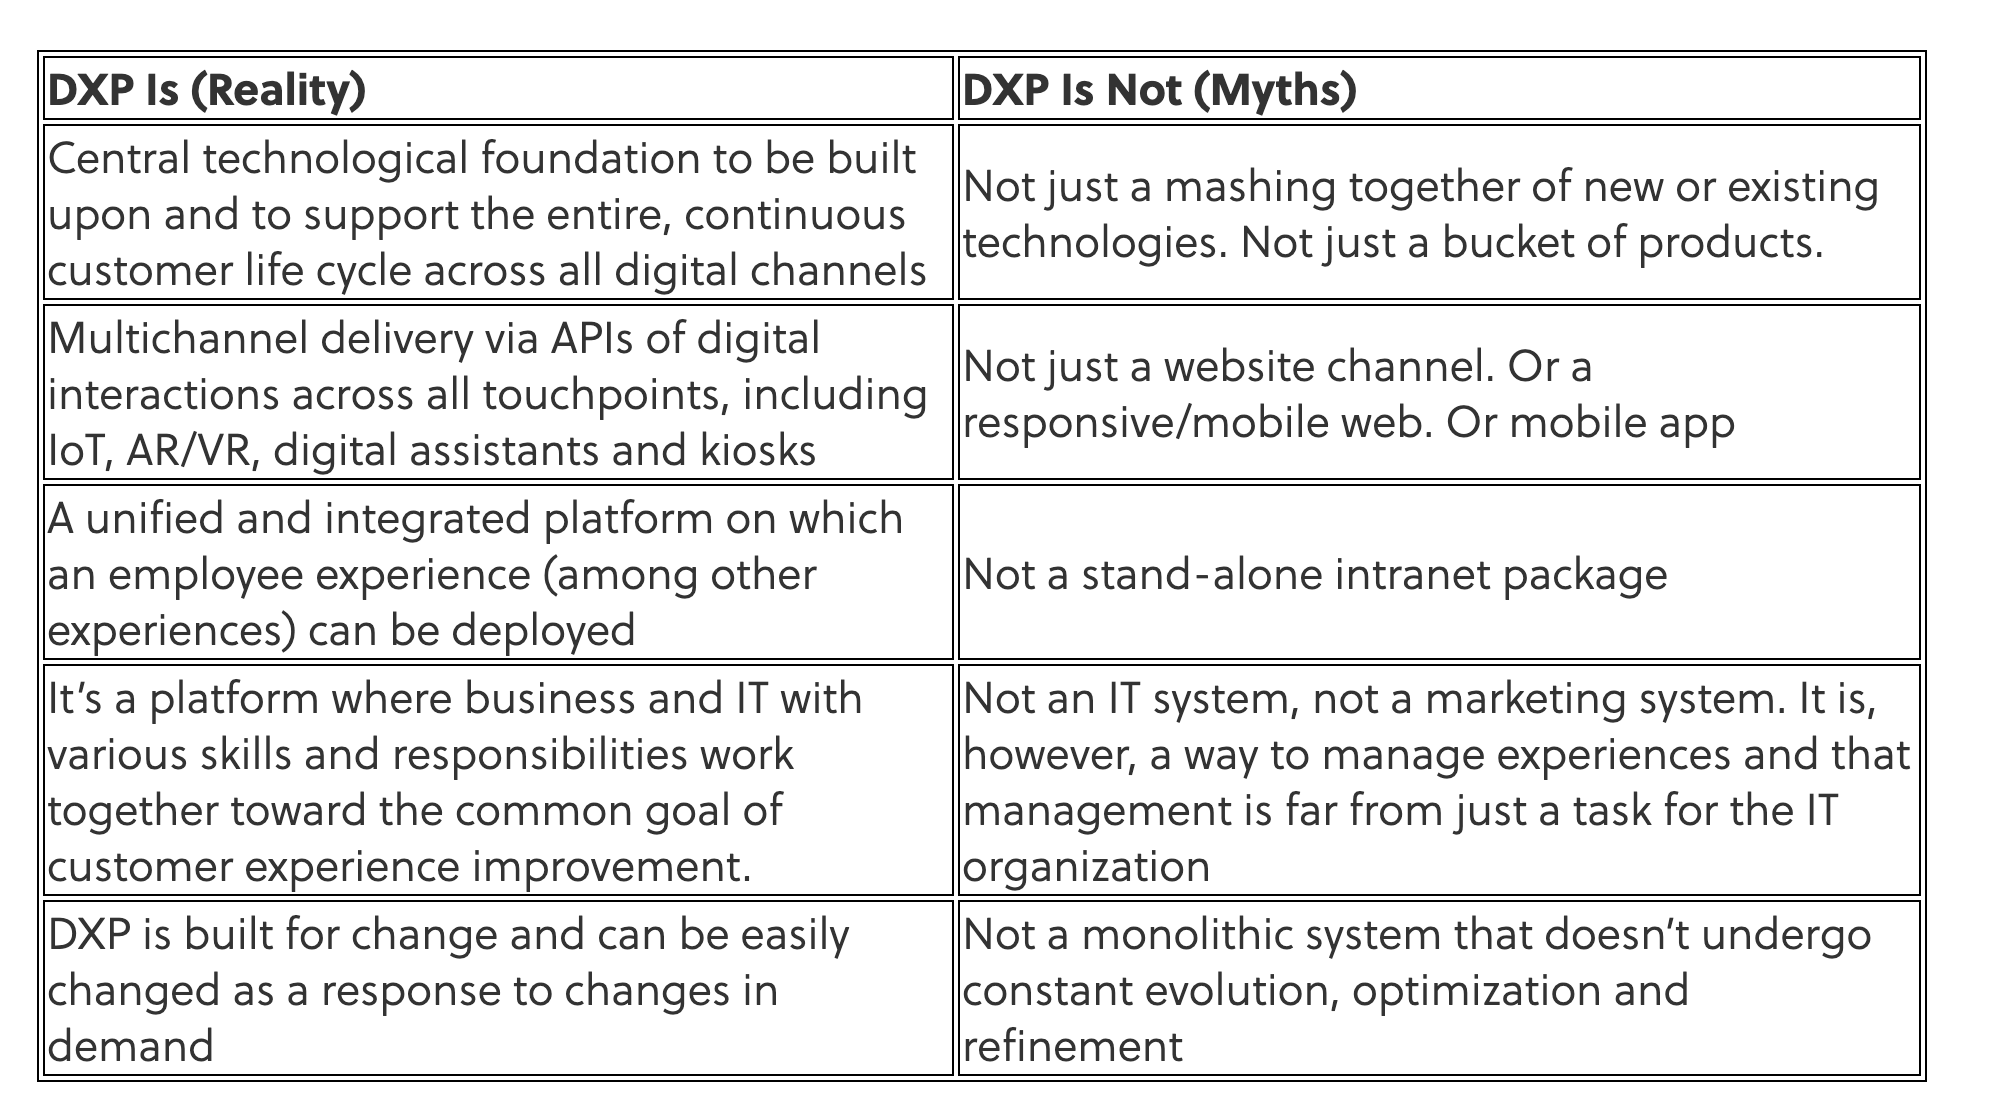 DXP myths vs Reality